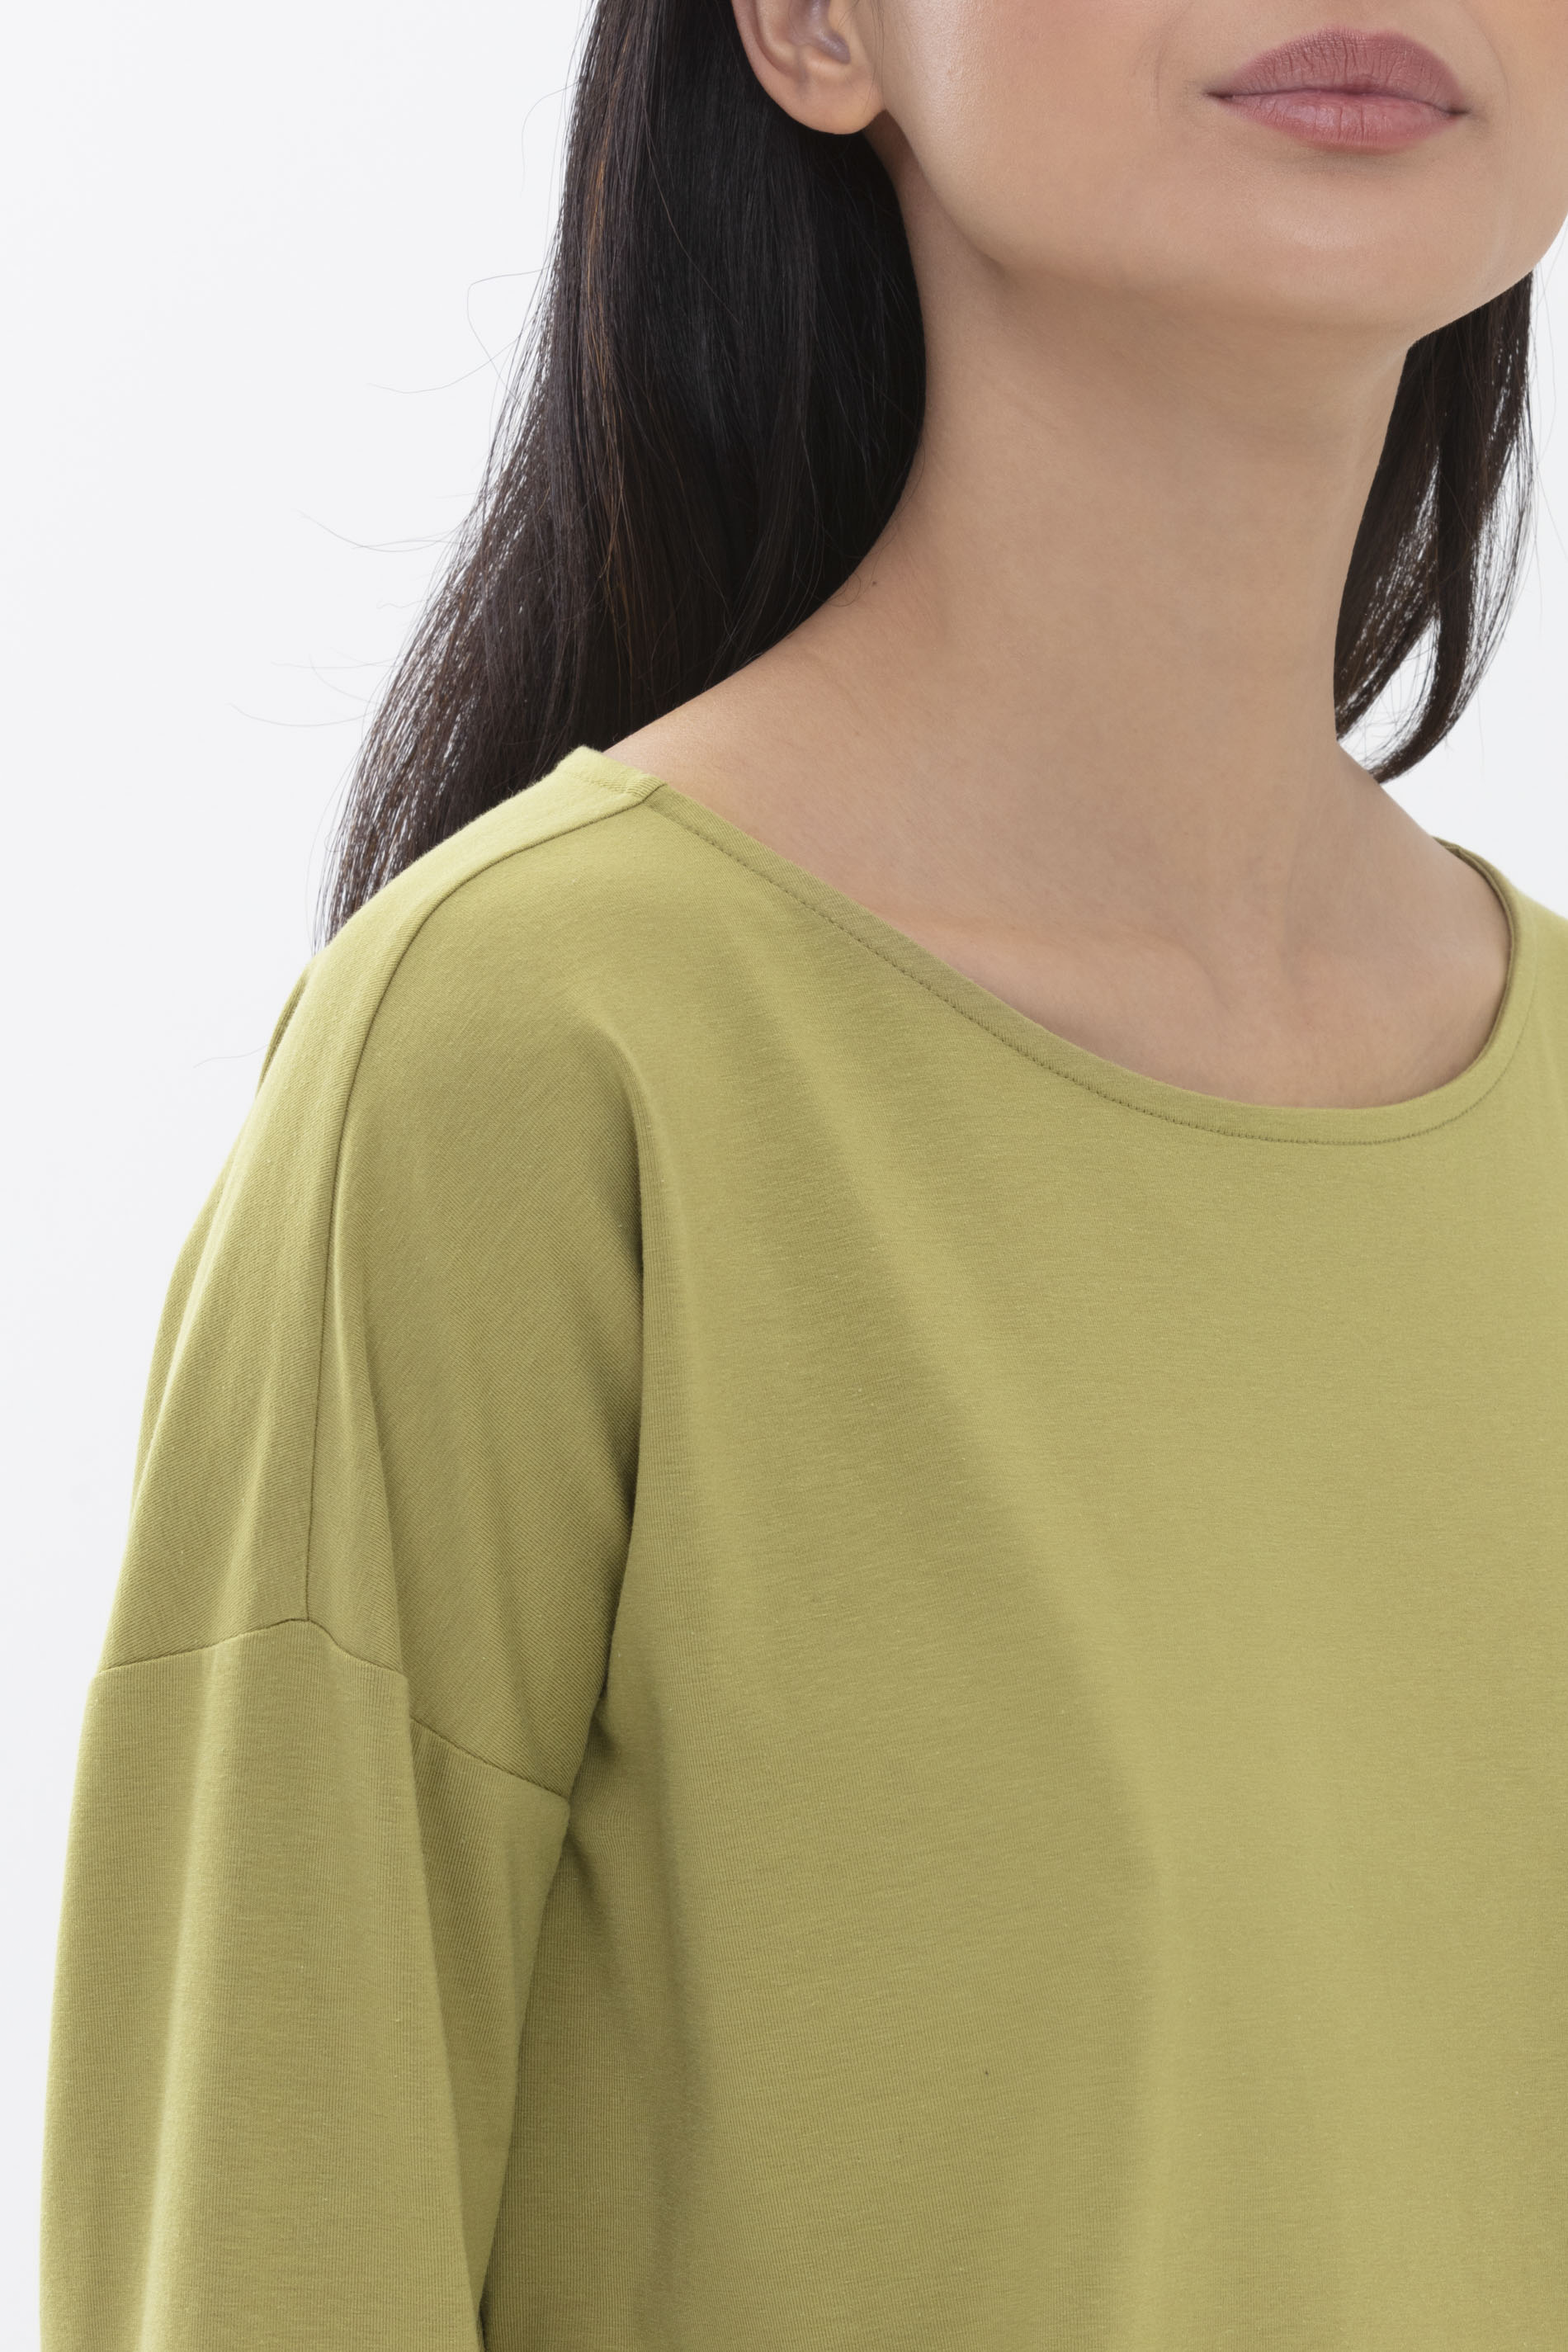 Langarm-Shirt Tuscan Green Serie Aya Detailansicht 02 | mey®